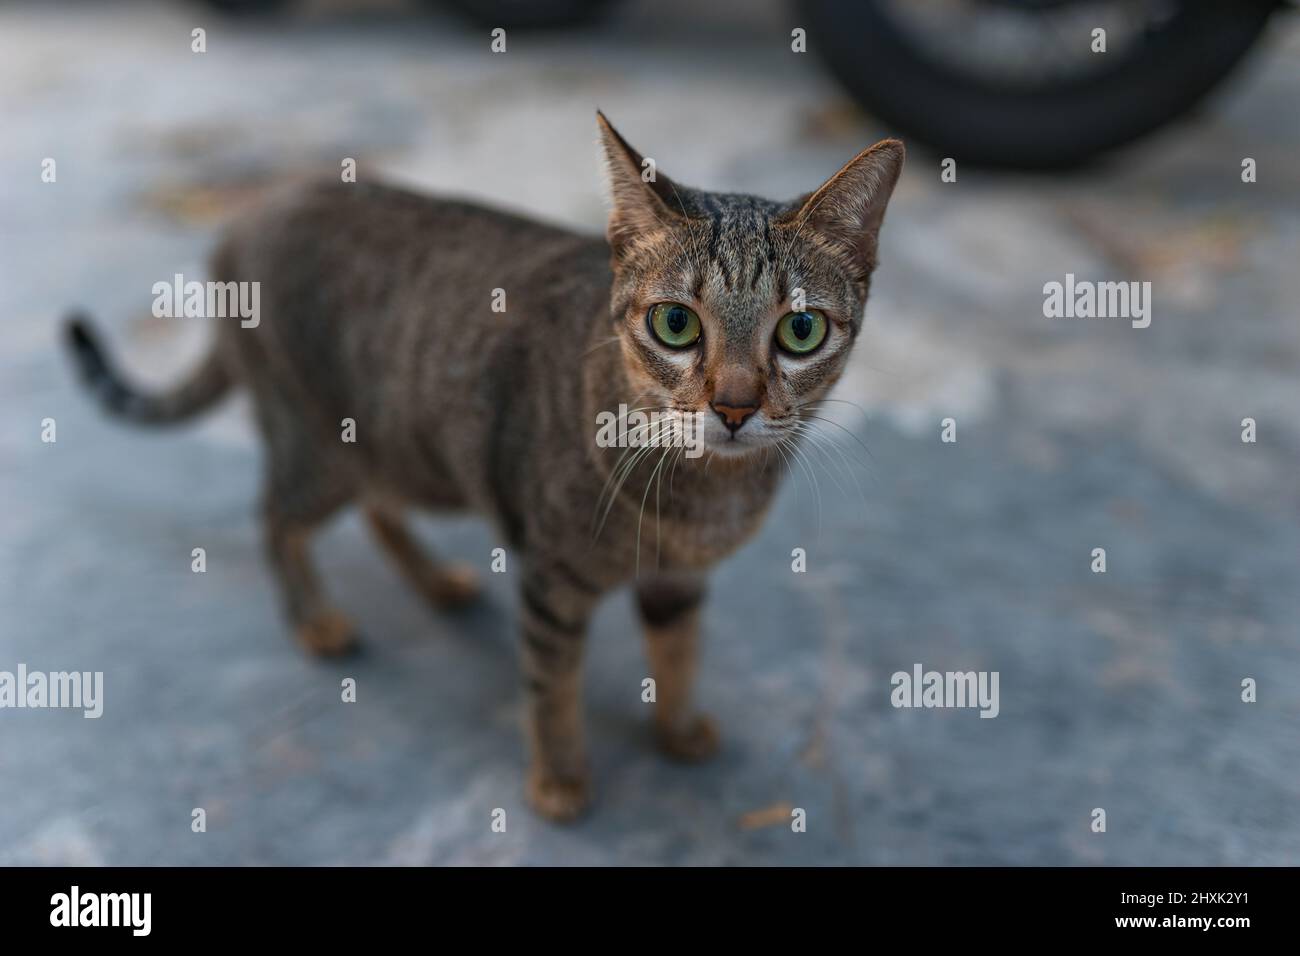 gatto grigio-marrone con occhi verdi in piedi e guardando la fotocamera. Carino gattino con occhi grandi. Foto di alta qualità Foto Stock